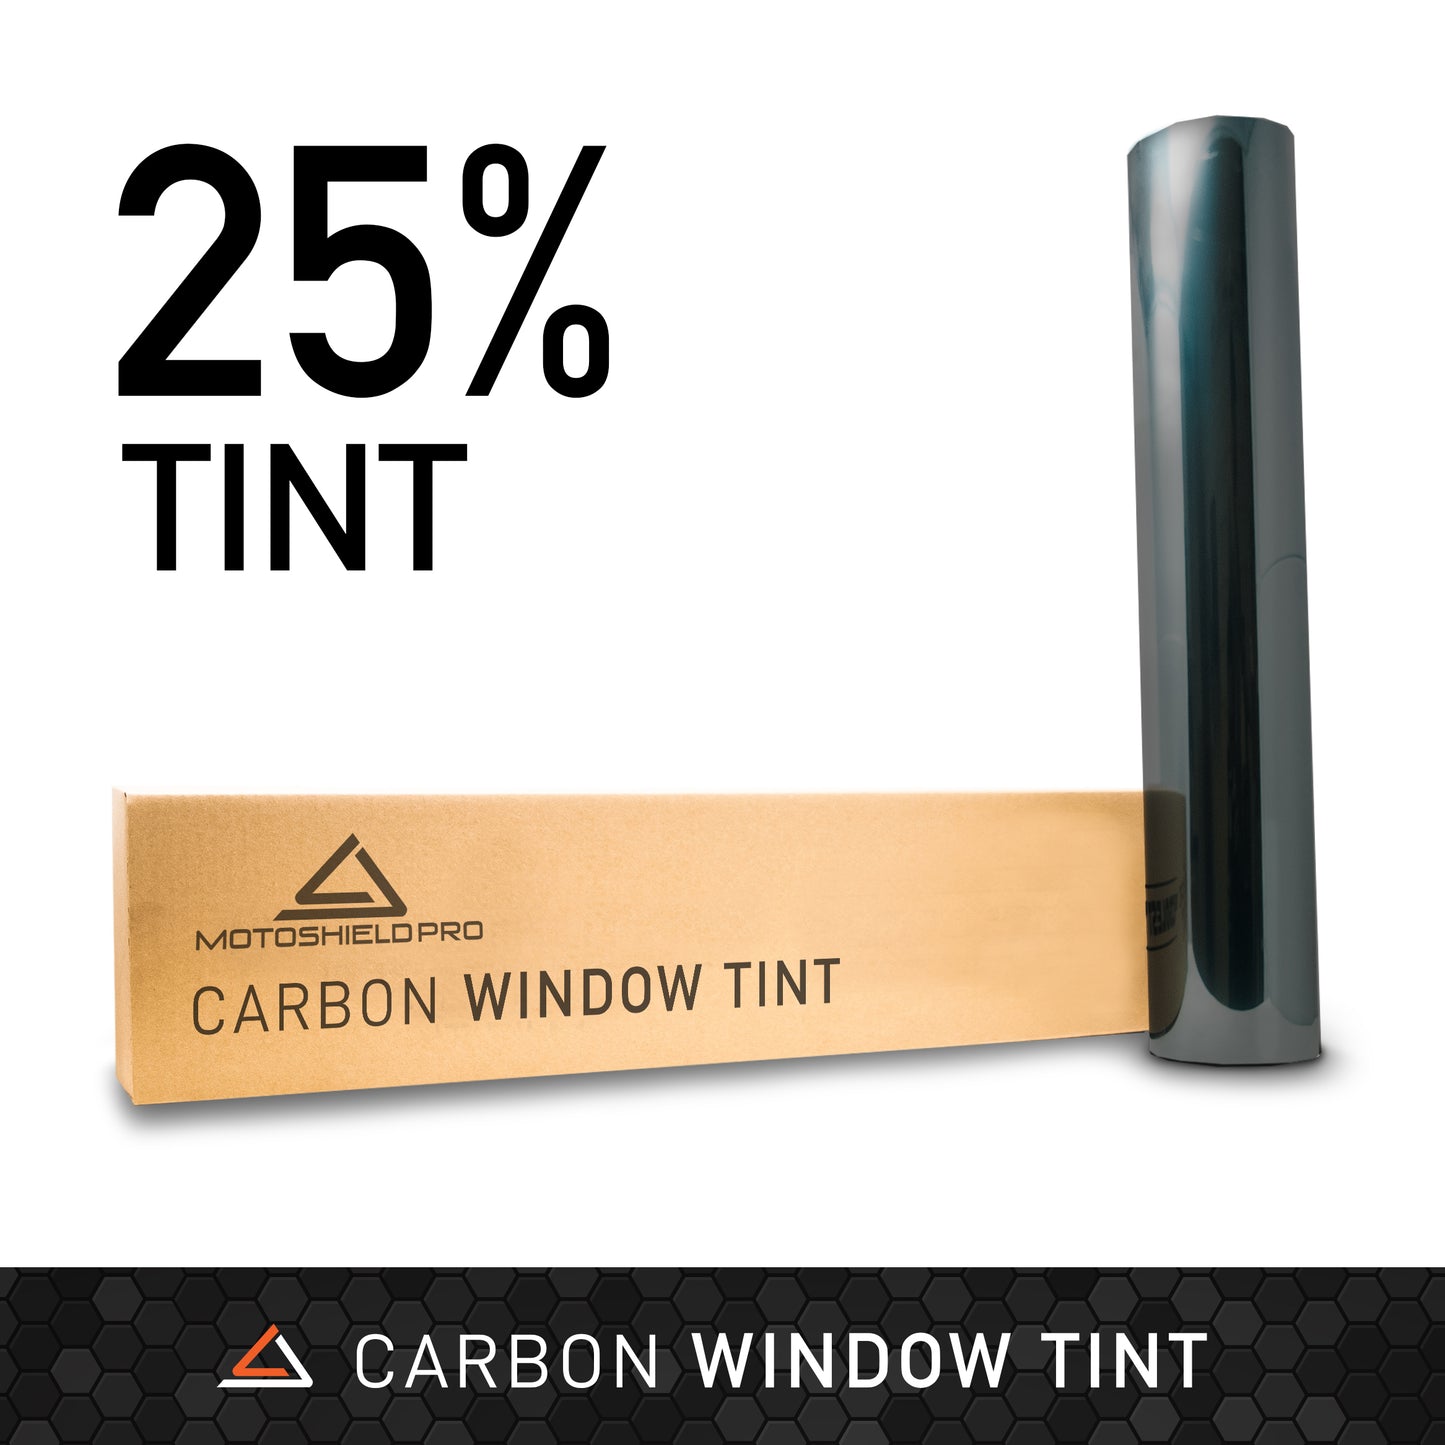 MOTOSHIELD PRO CARBON WINDOW 25% TINT - 40" IN X 100' FT ROLL + LIFETIME WARRANTY